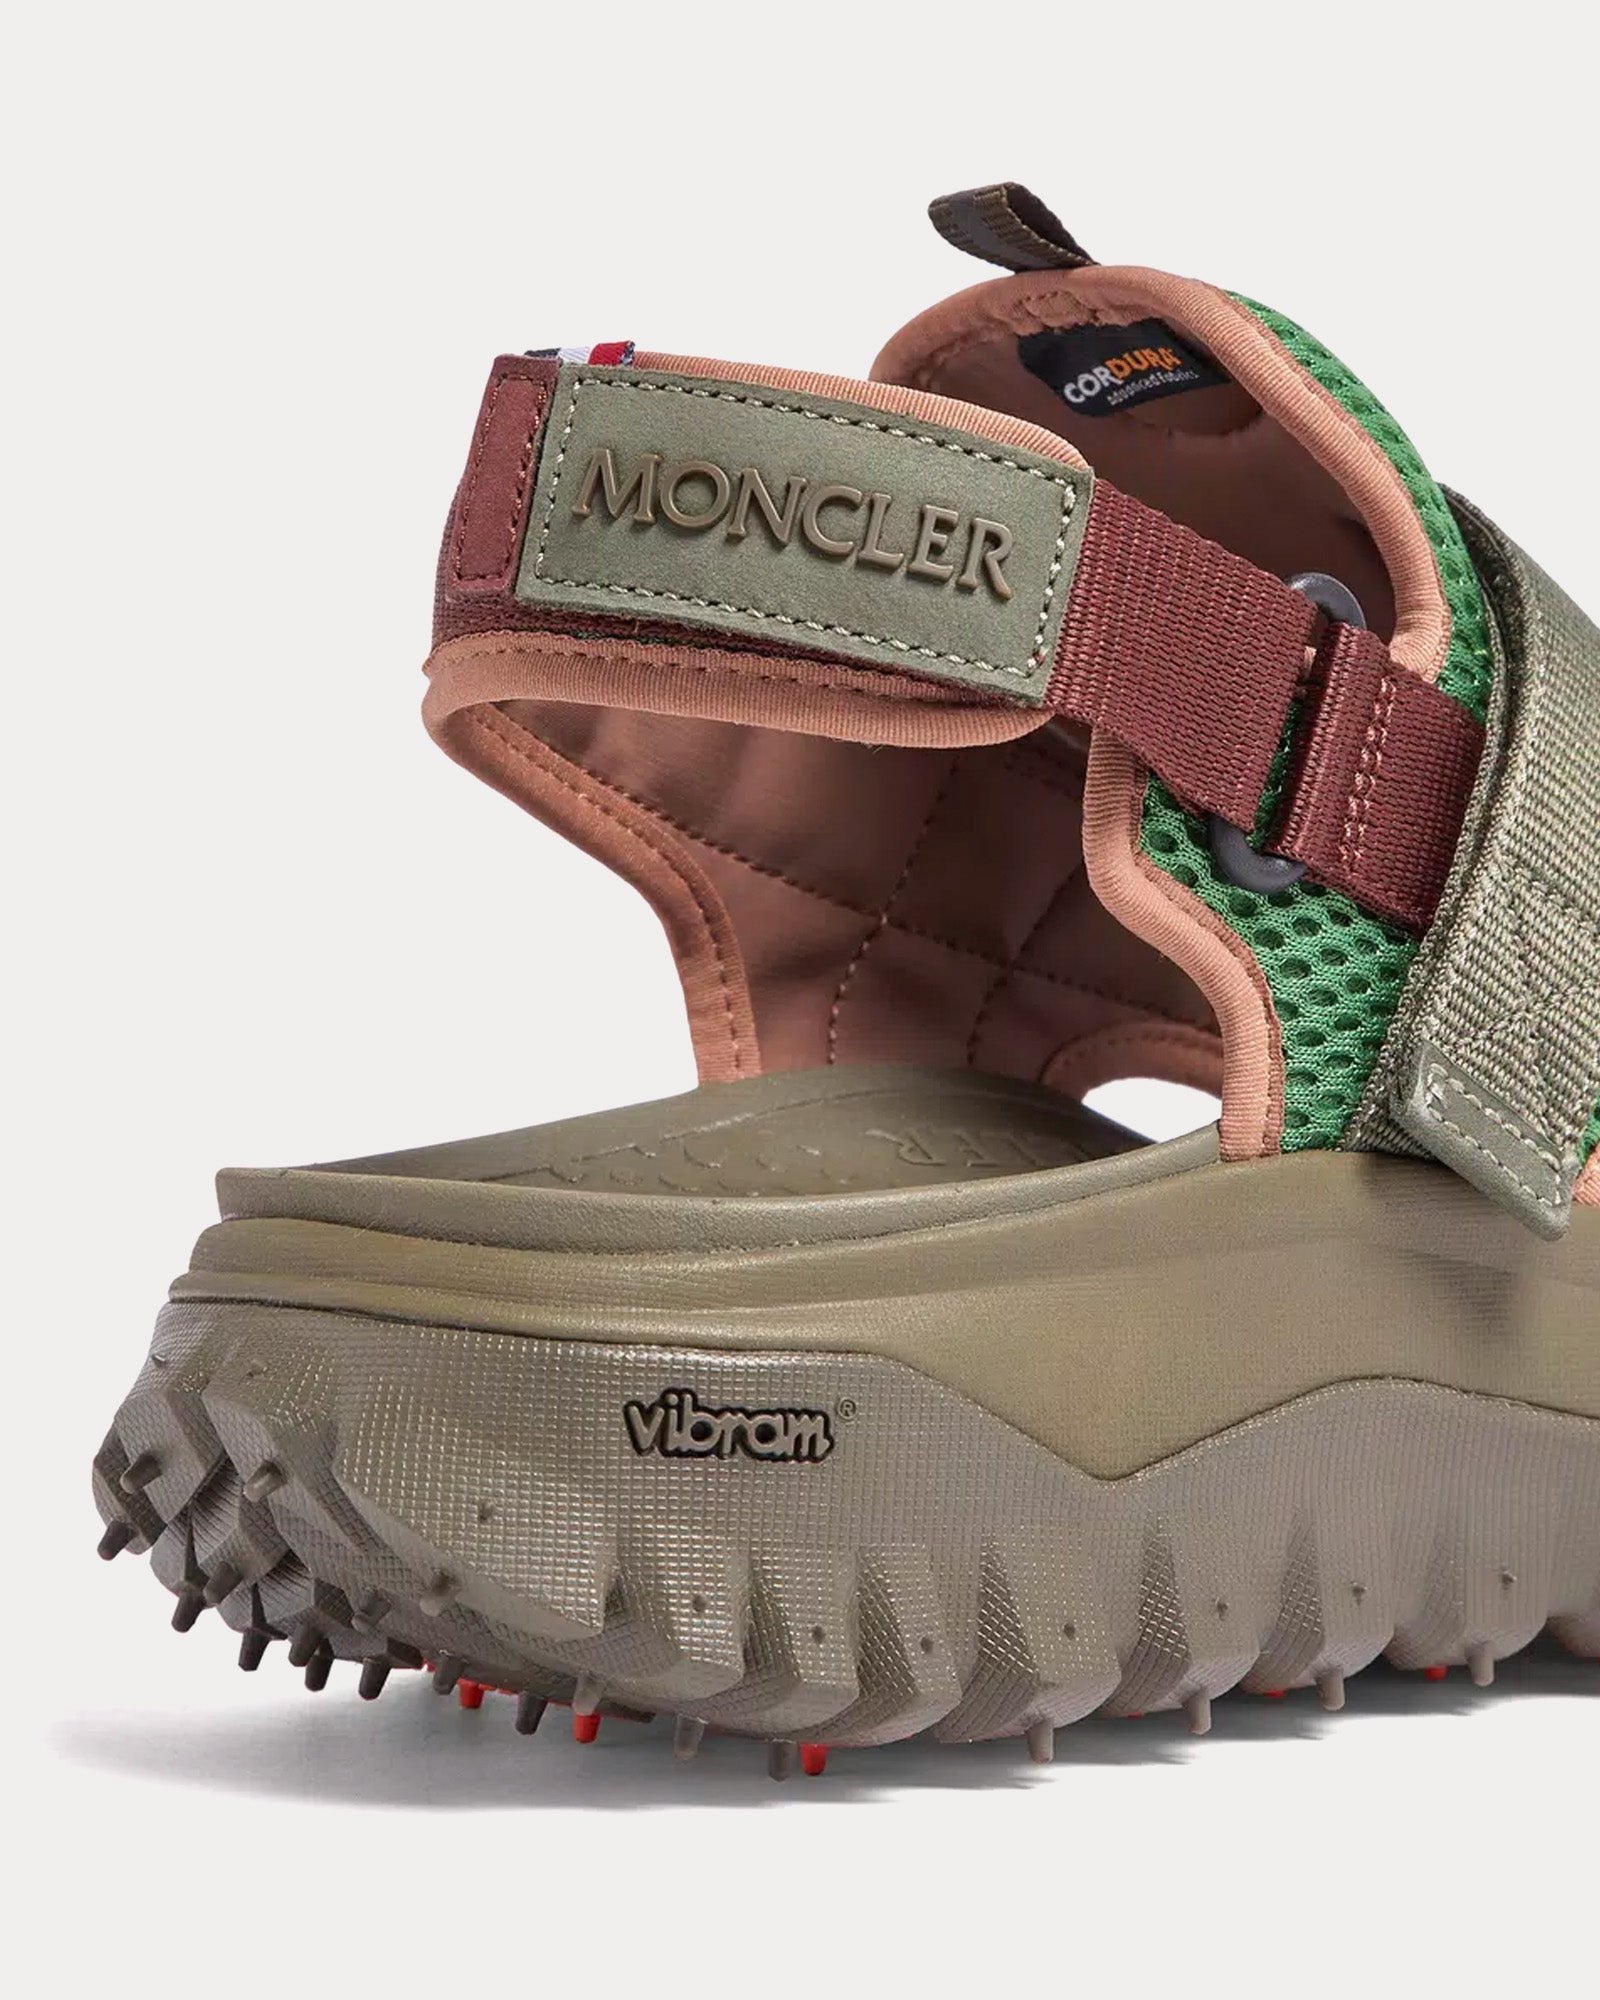 Moncler - Trailgrip Vela Green Sandals